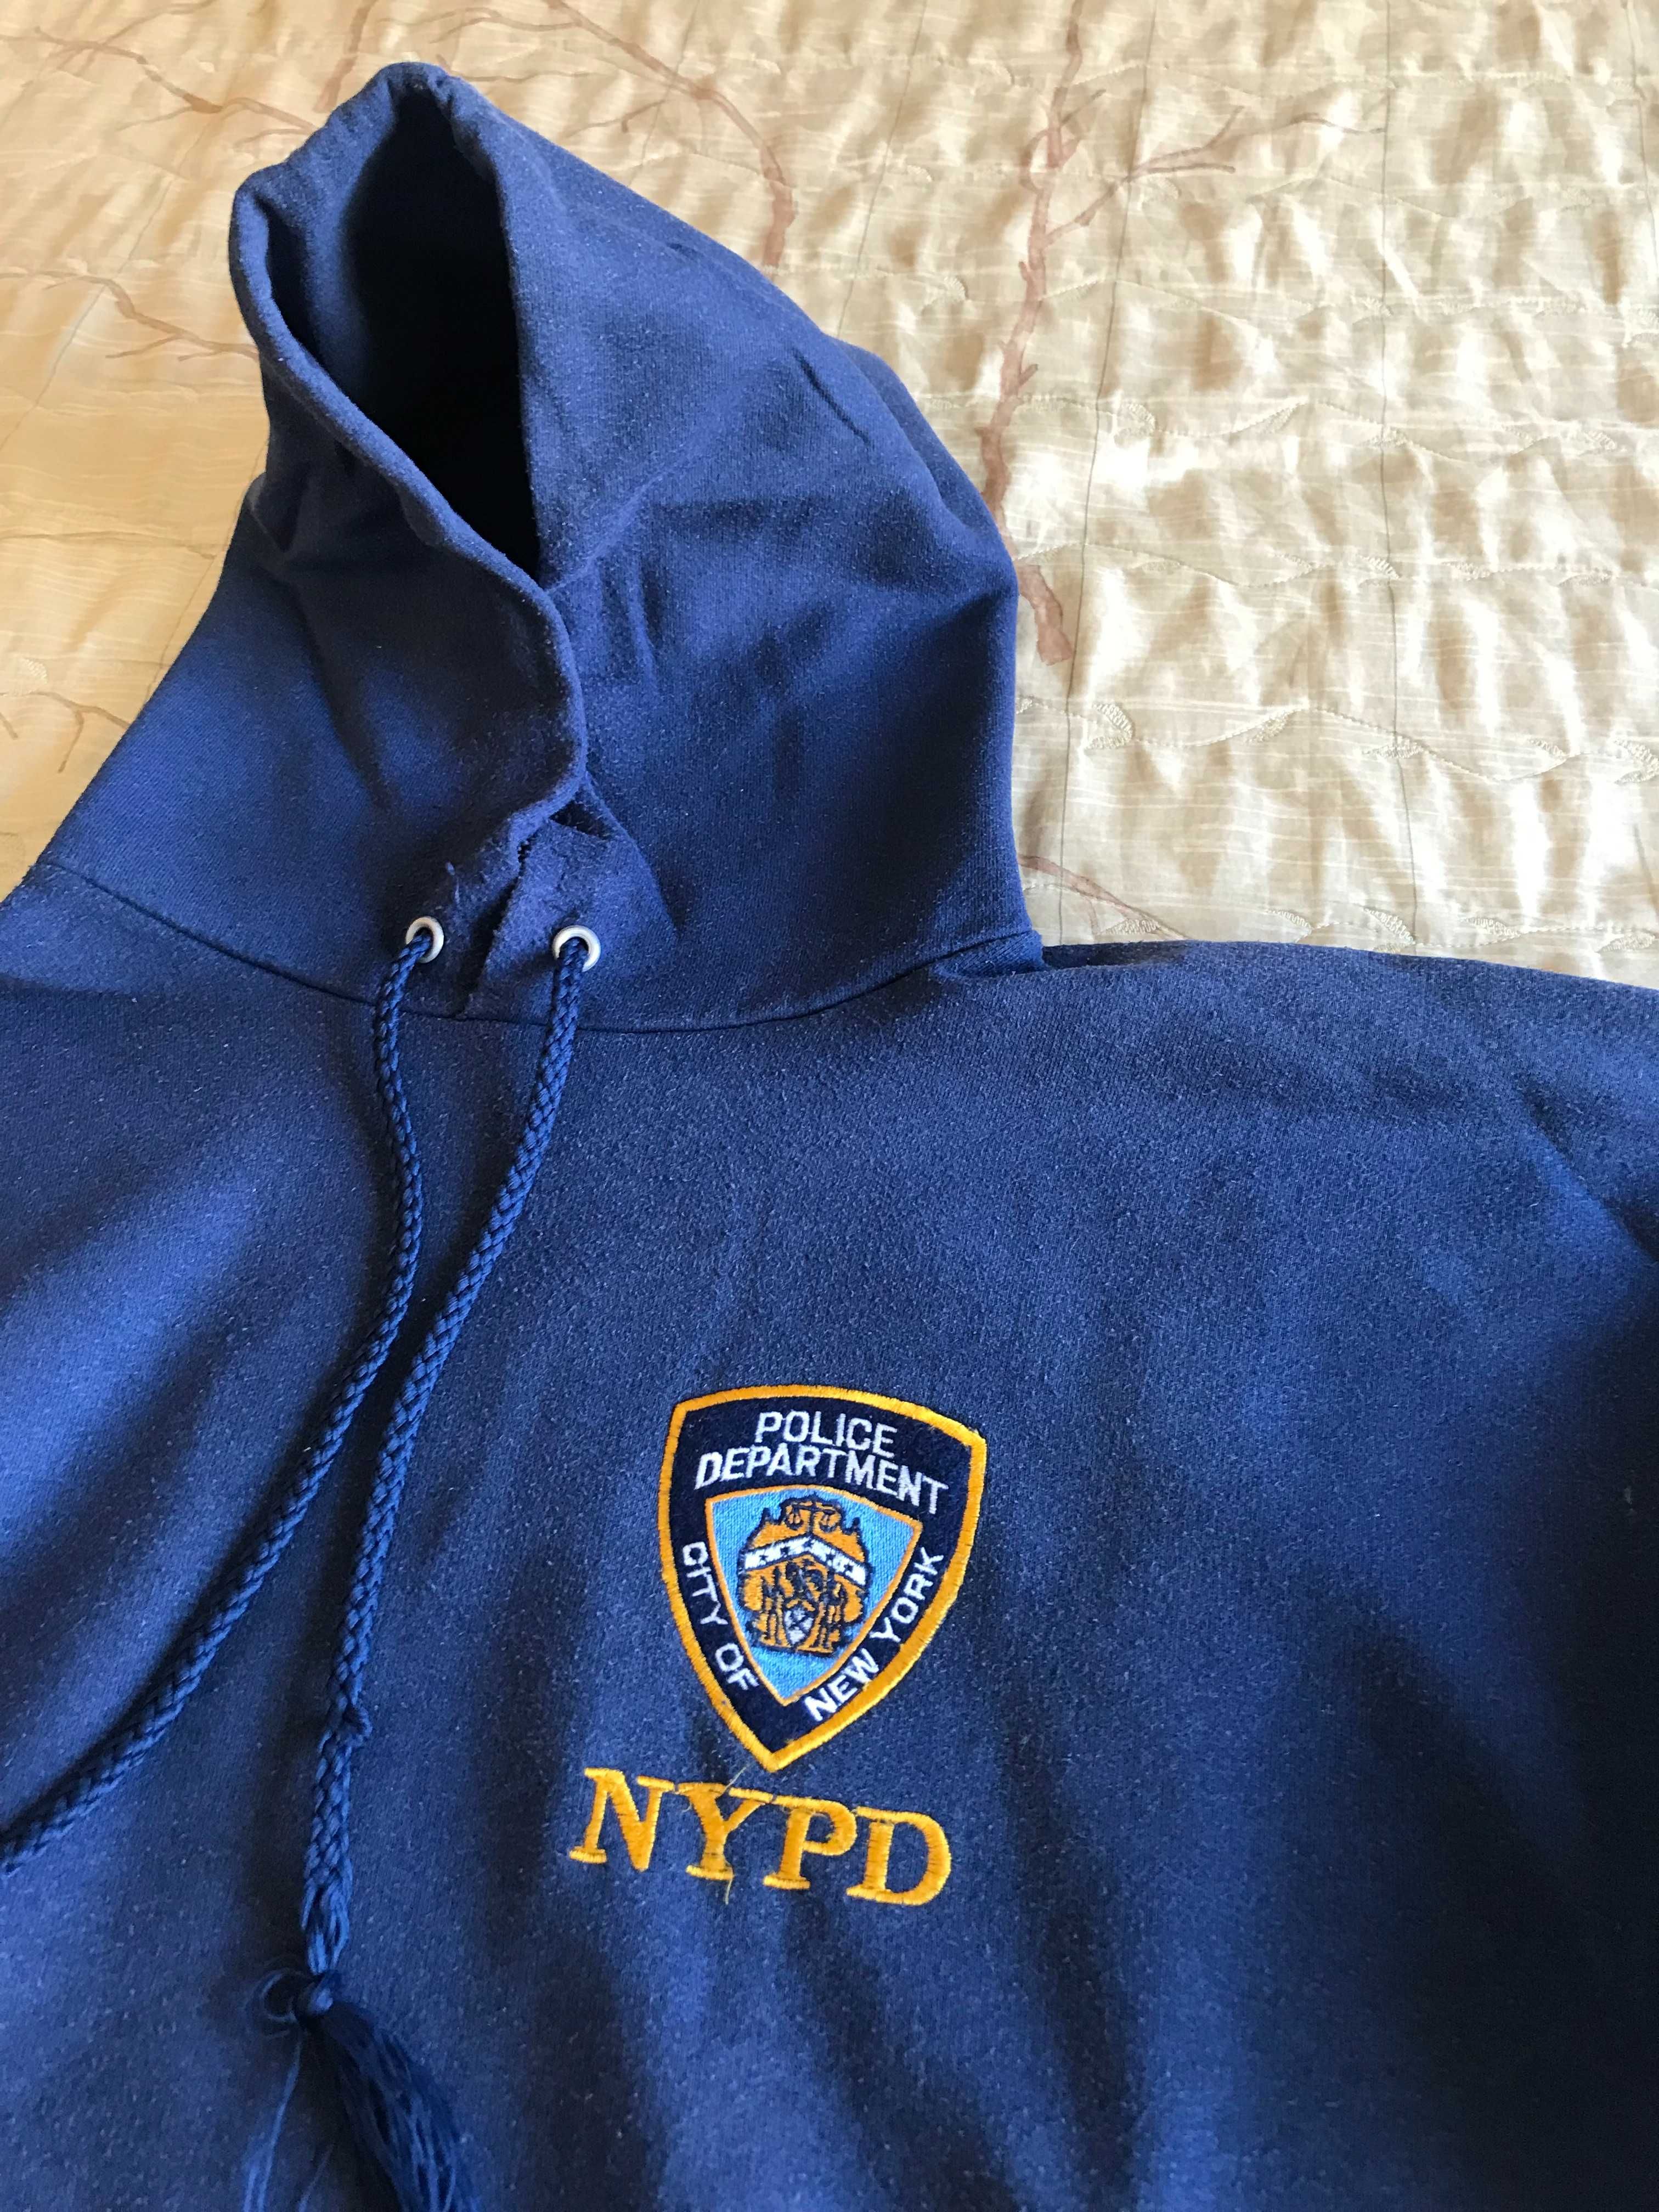 casaco com capuz, Polícia de Nova Iorque + galhardete Policia Israel